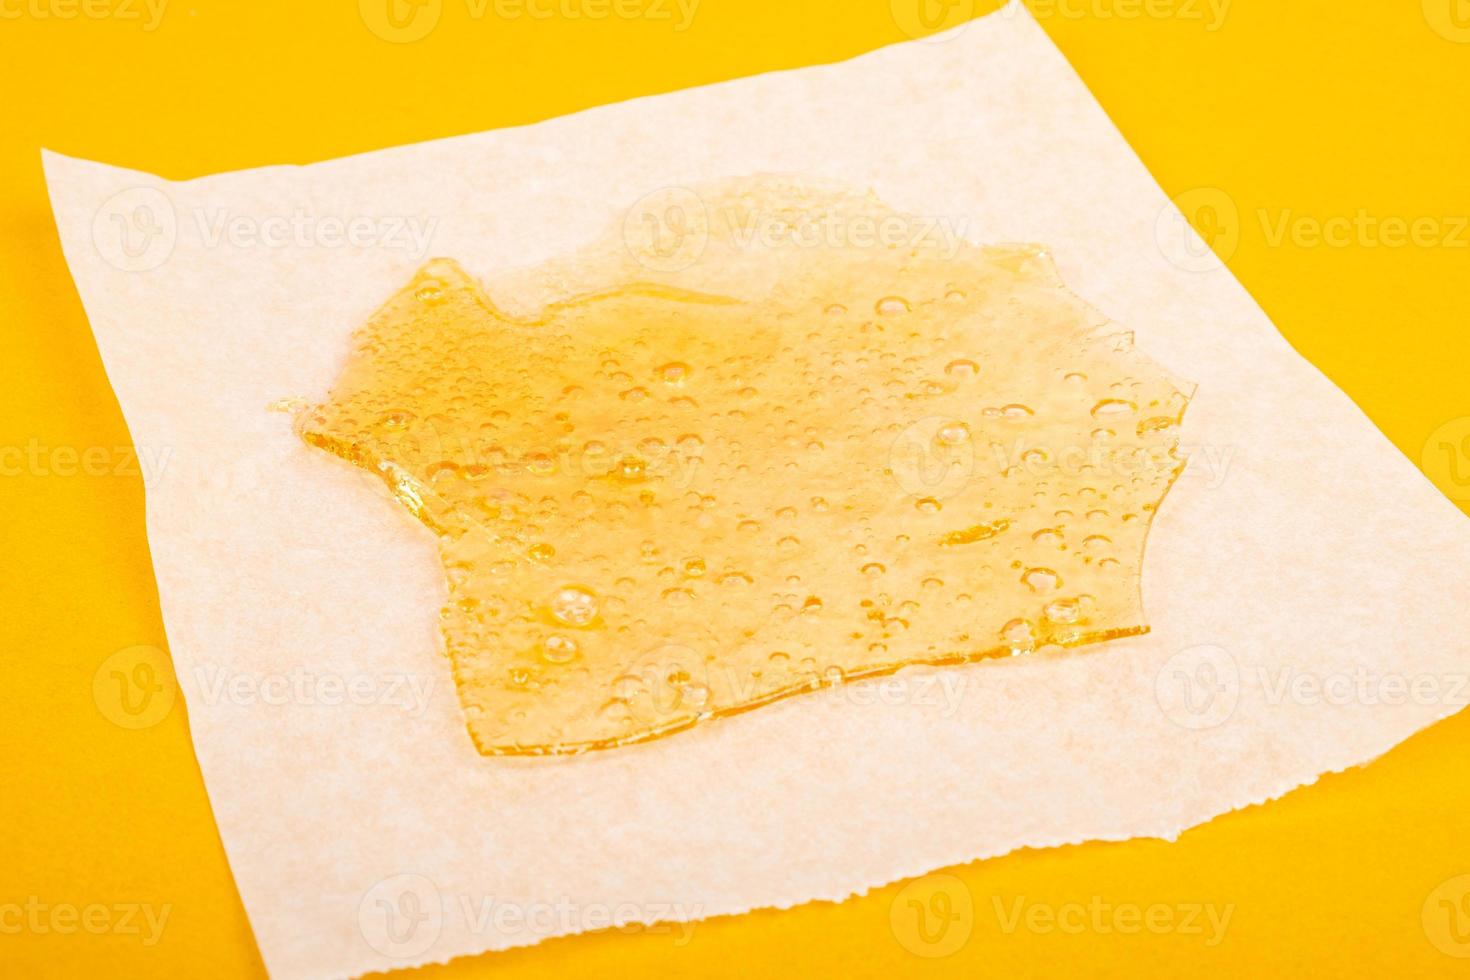 extrato de cera de maconha com alto thc em papel pergaminho em fundo amarelo foto